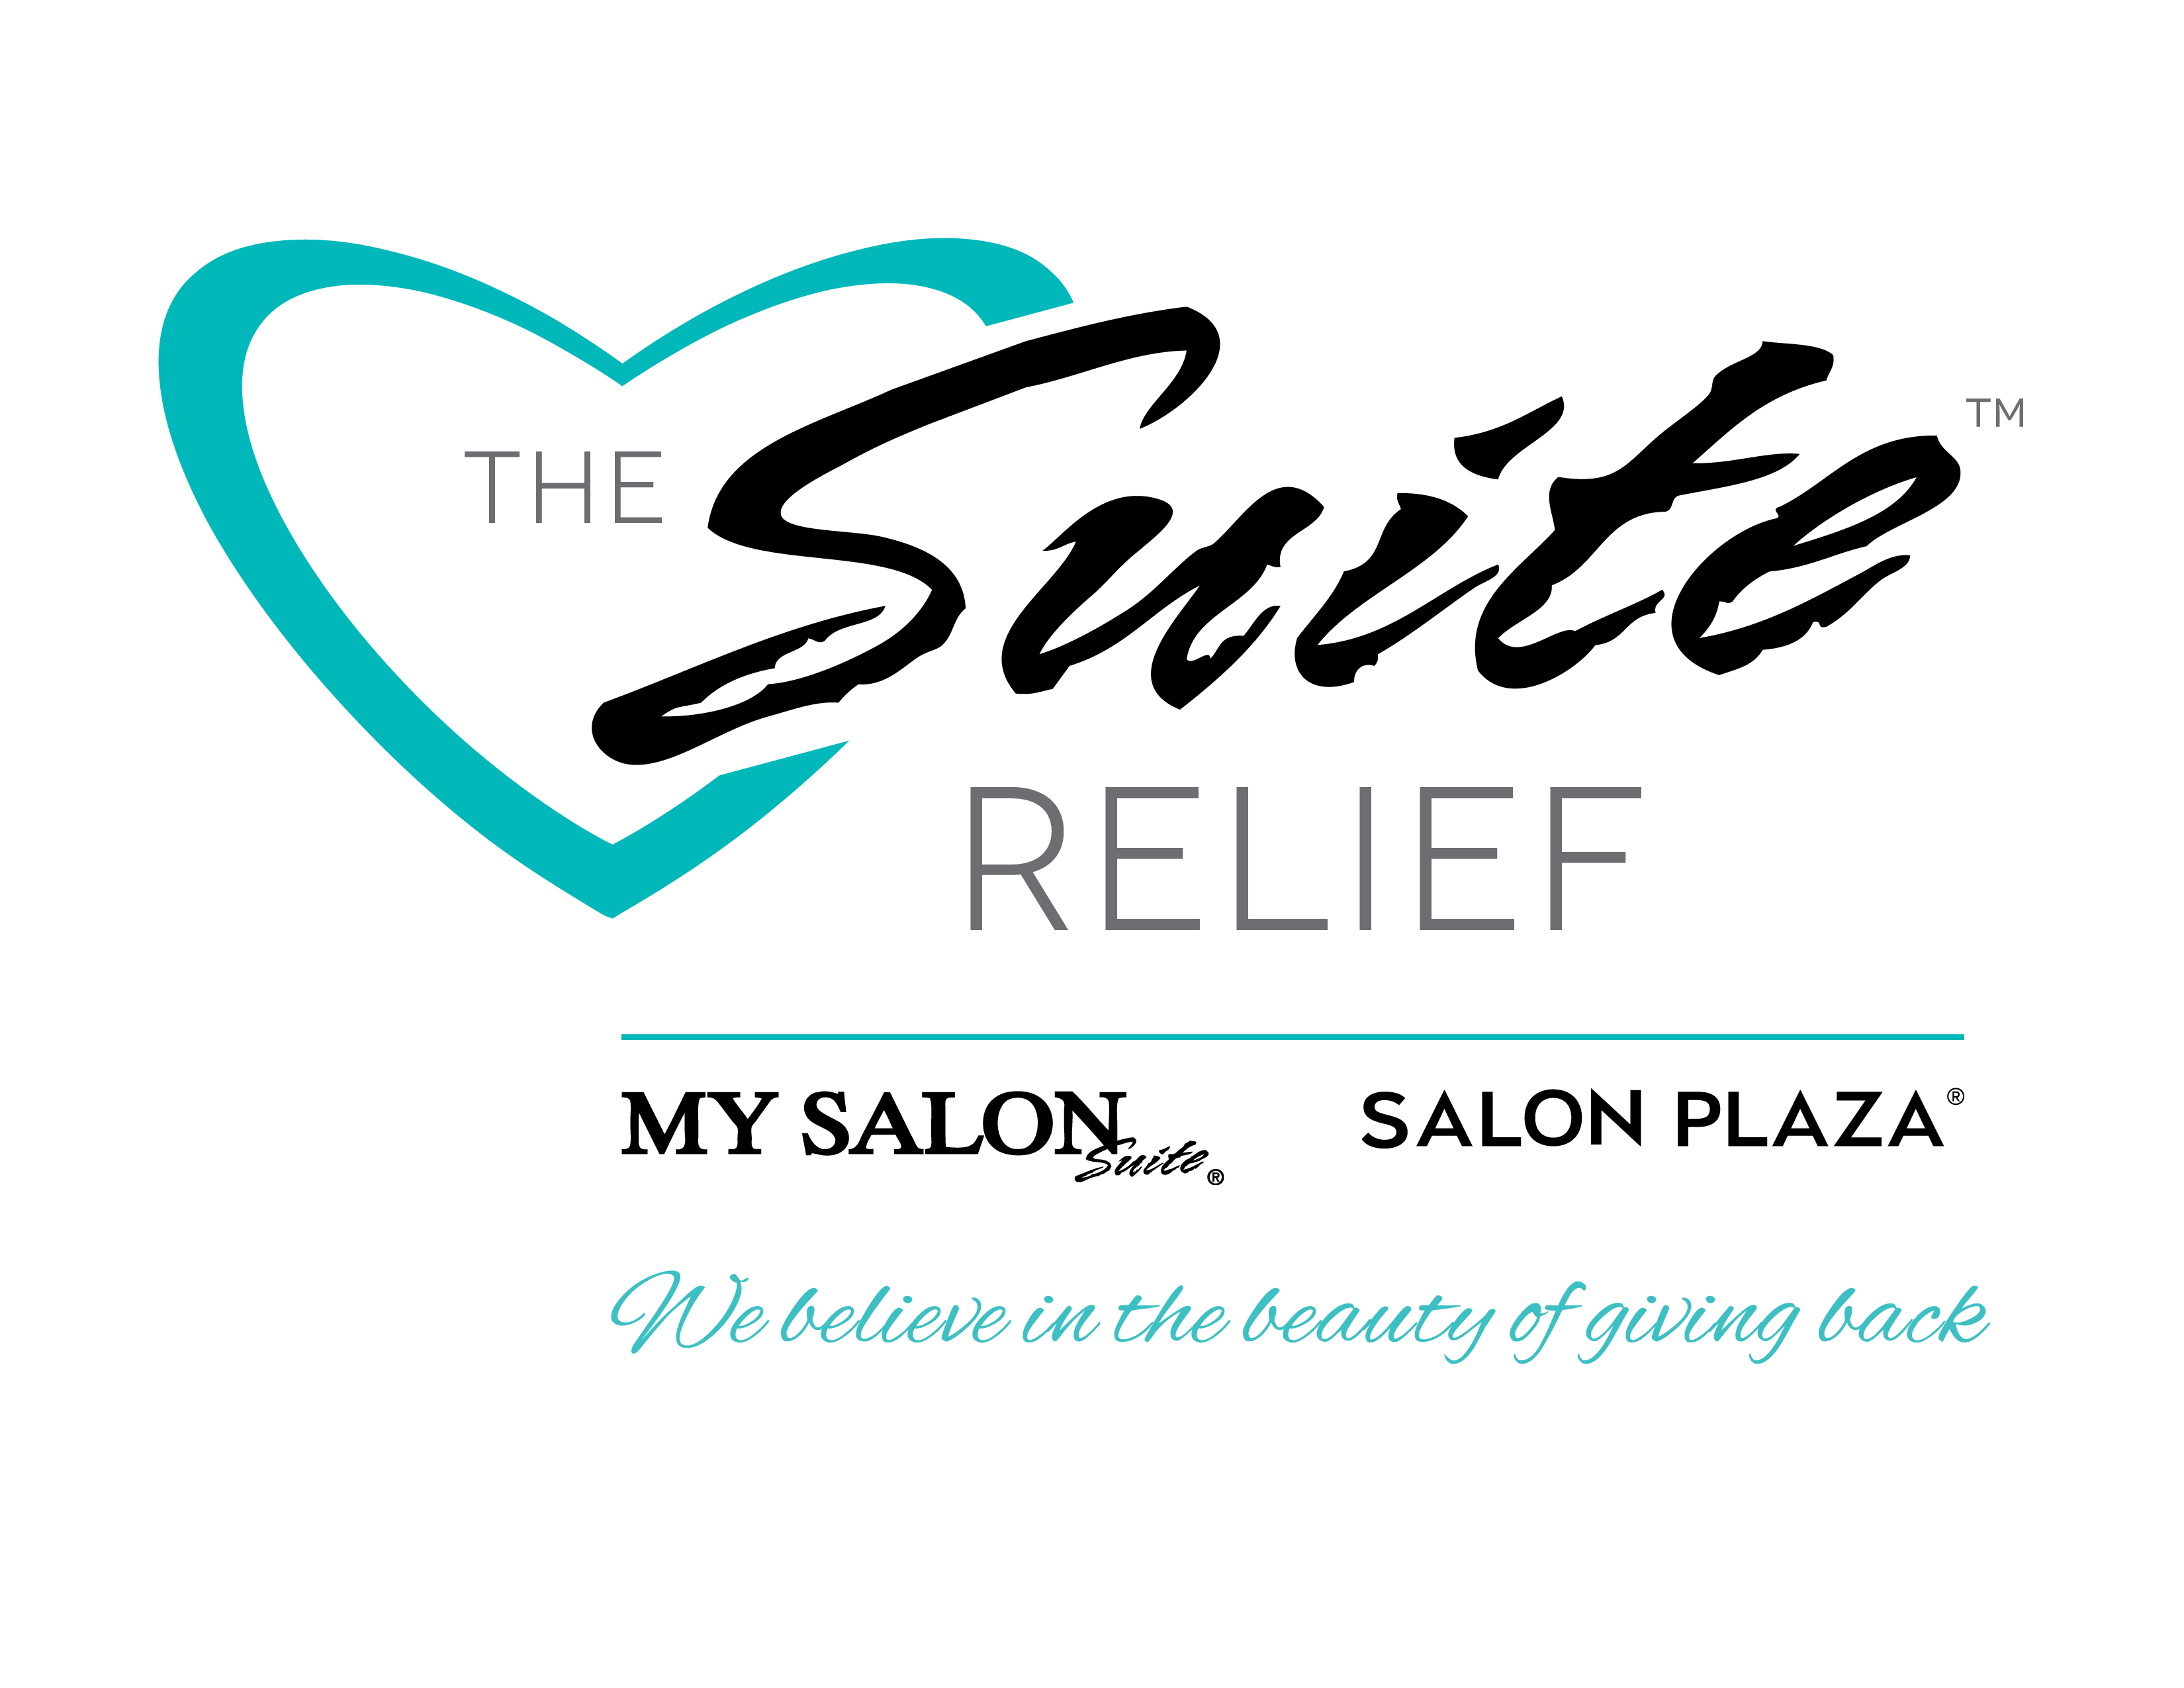 Relief Fund